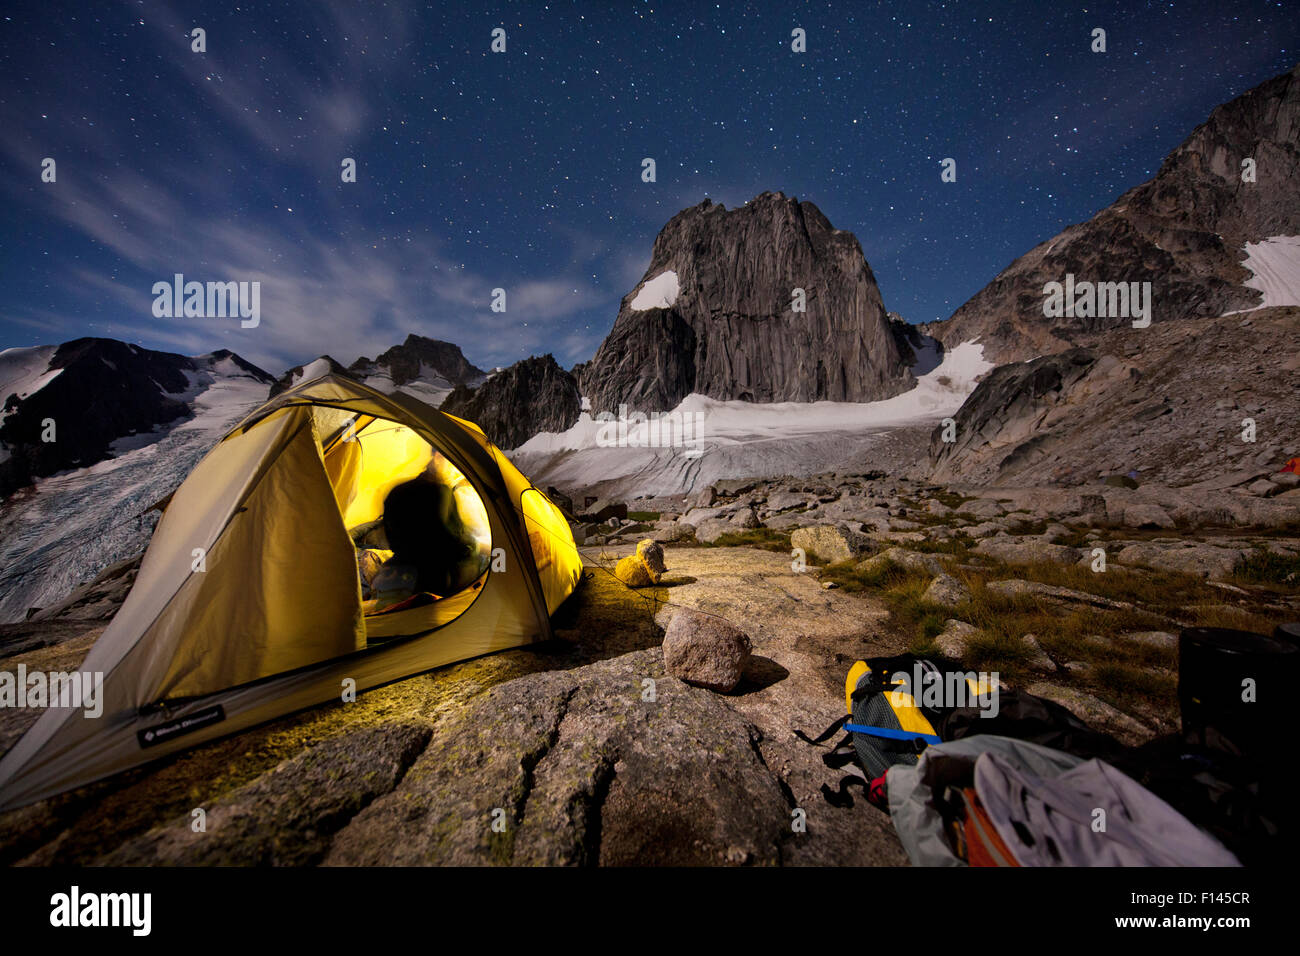 Campingplatz in der Nacht, Applebee Camp im Bugaboo Provincial Park, British Columbia, Canada, August 2013. -Modell veröffentlicht. Stockfoto